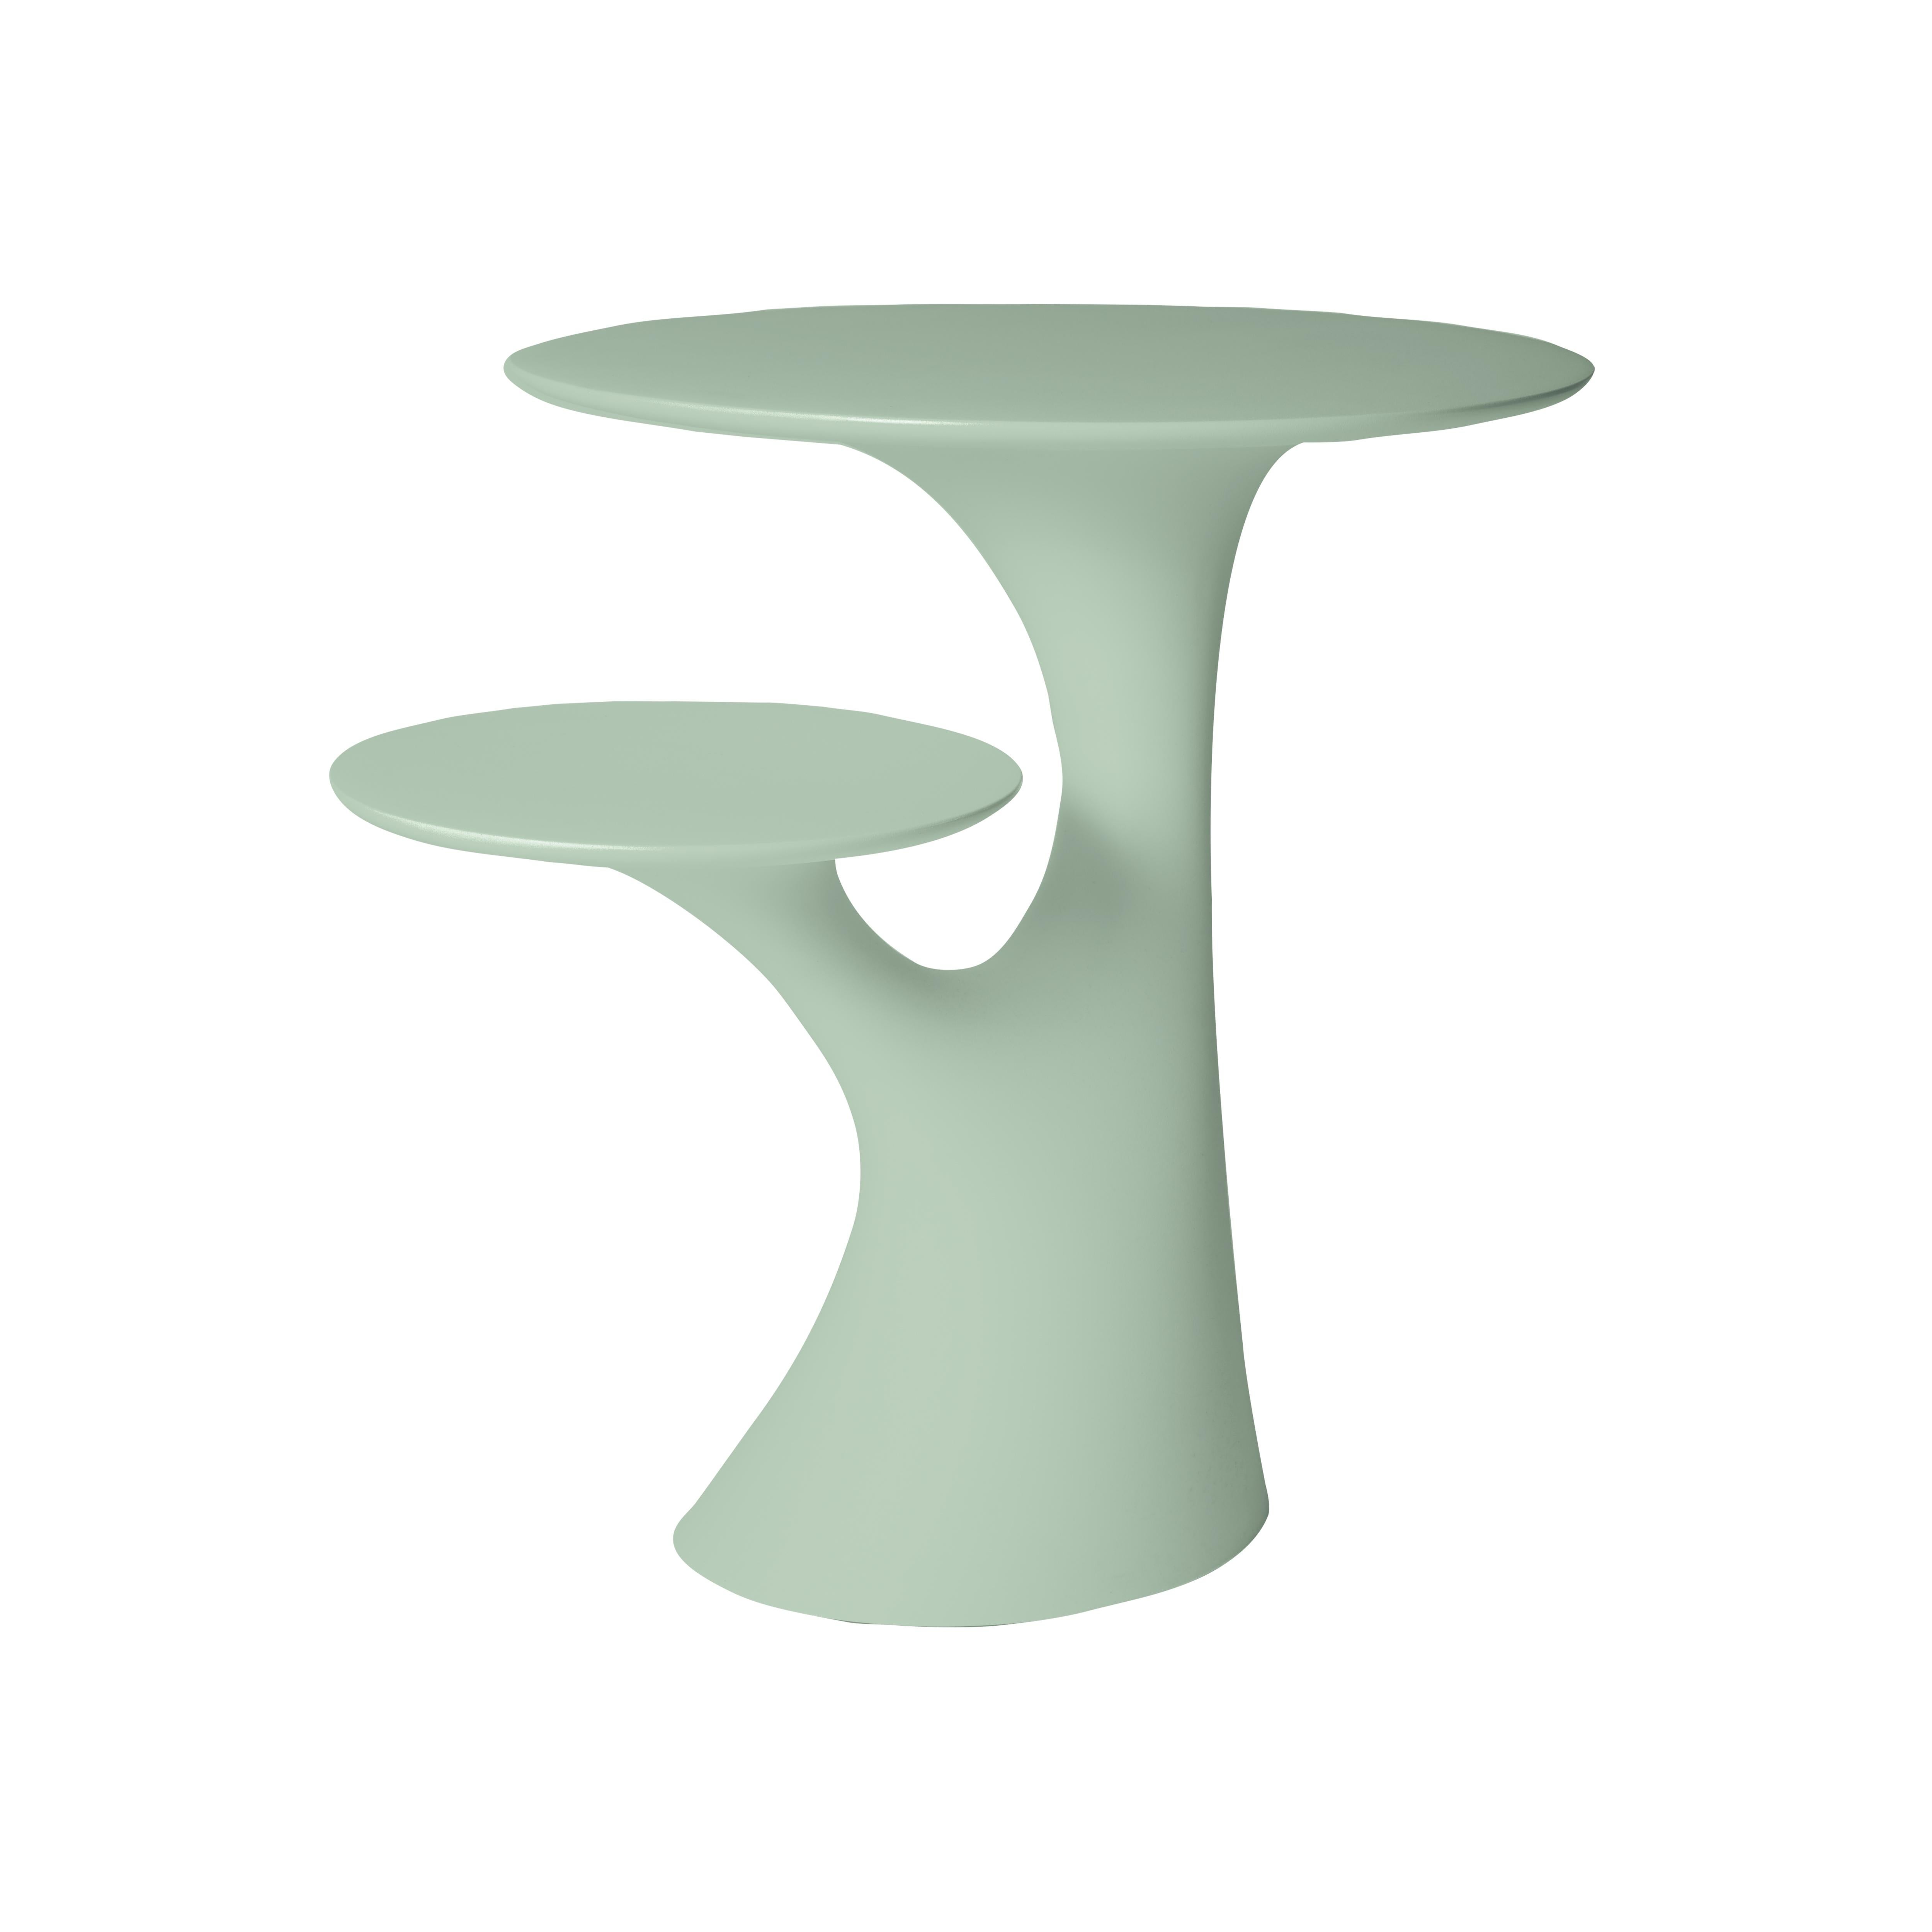 En vente : Green (Balsam Green) Table d'appoint moderne en plastique blanc, gris, vert, rose ou en forme d'arbre par Stefano Giovannoni 2